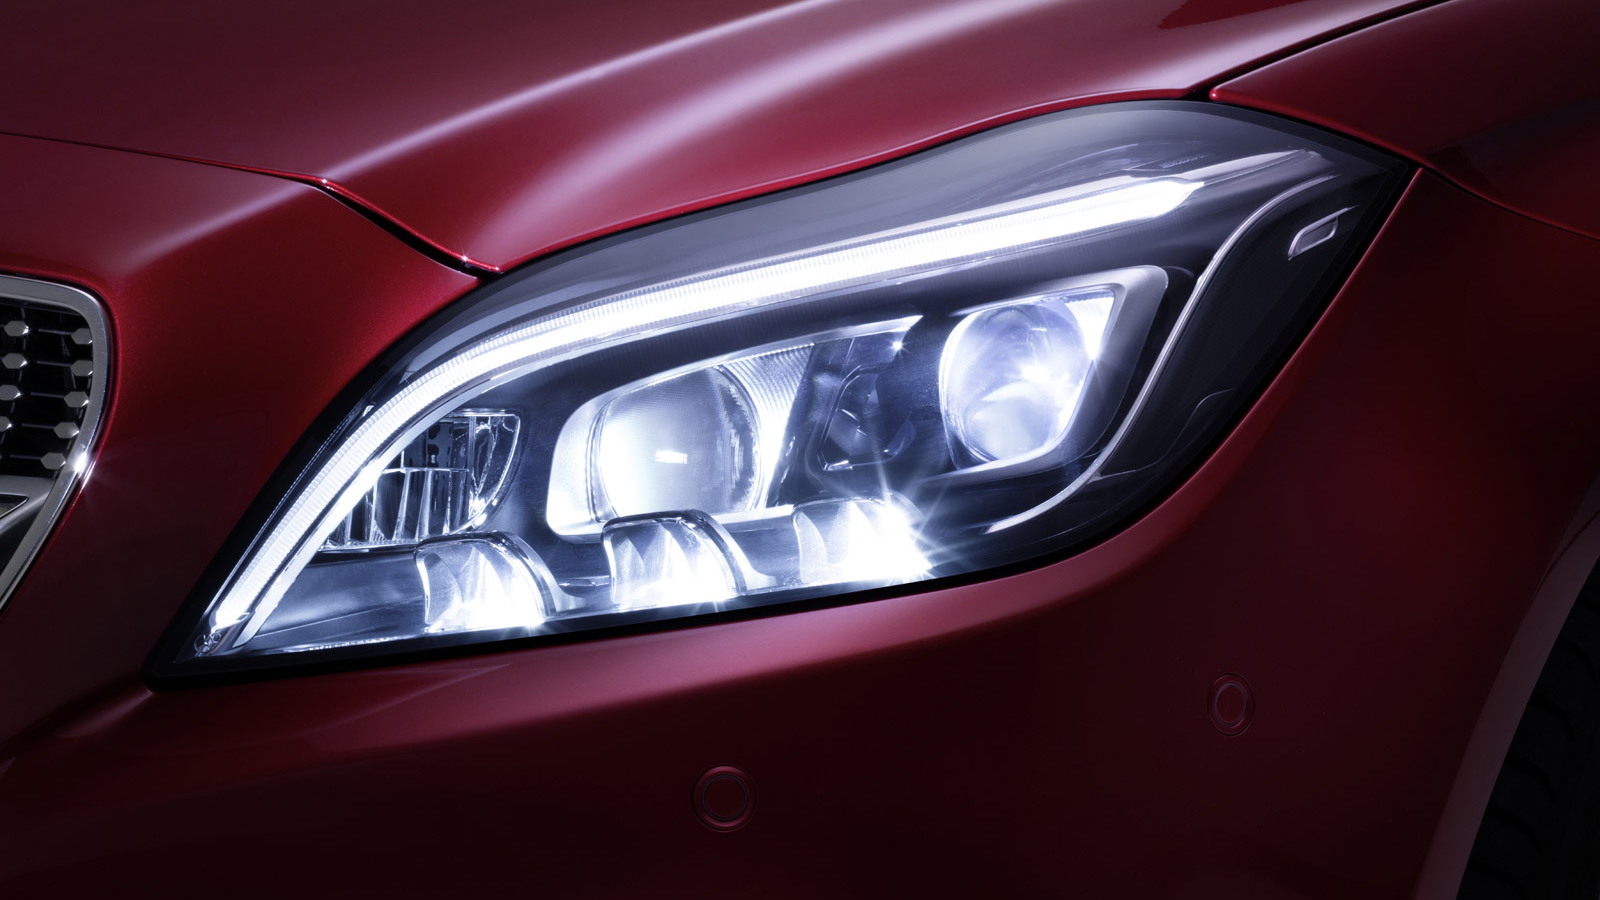 2015 Mercedes-Benz CLS-Class MULTIBEAM LED headlights